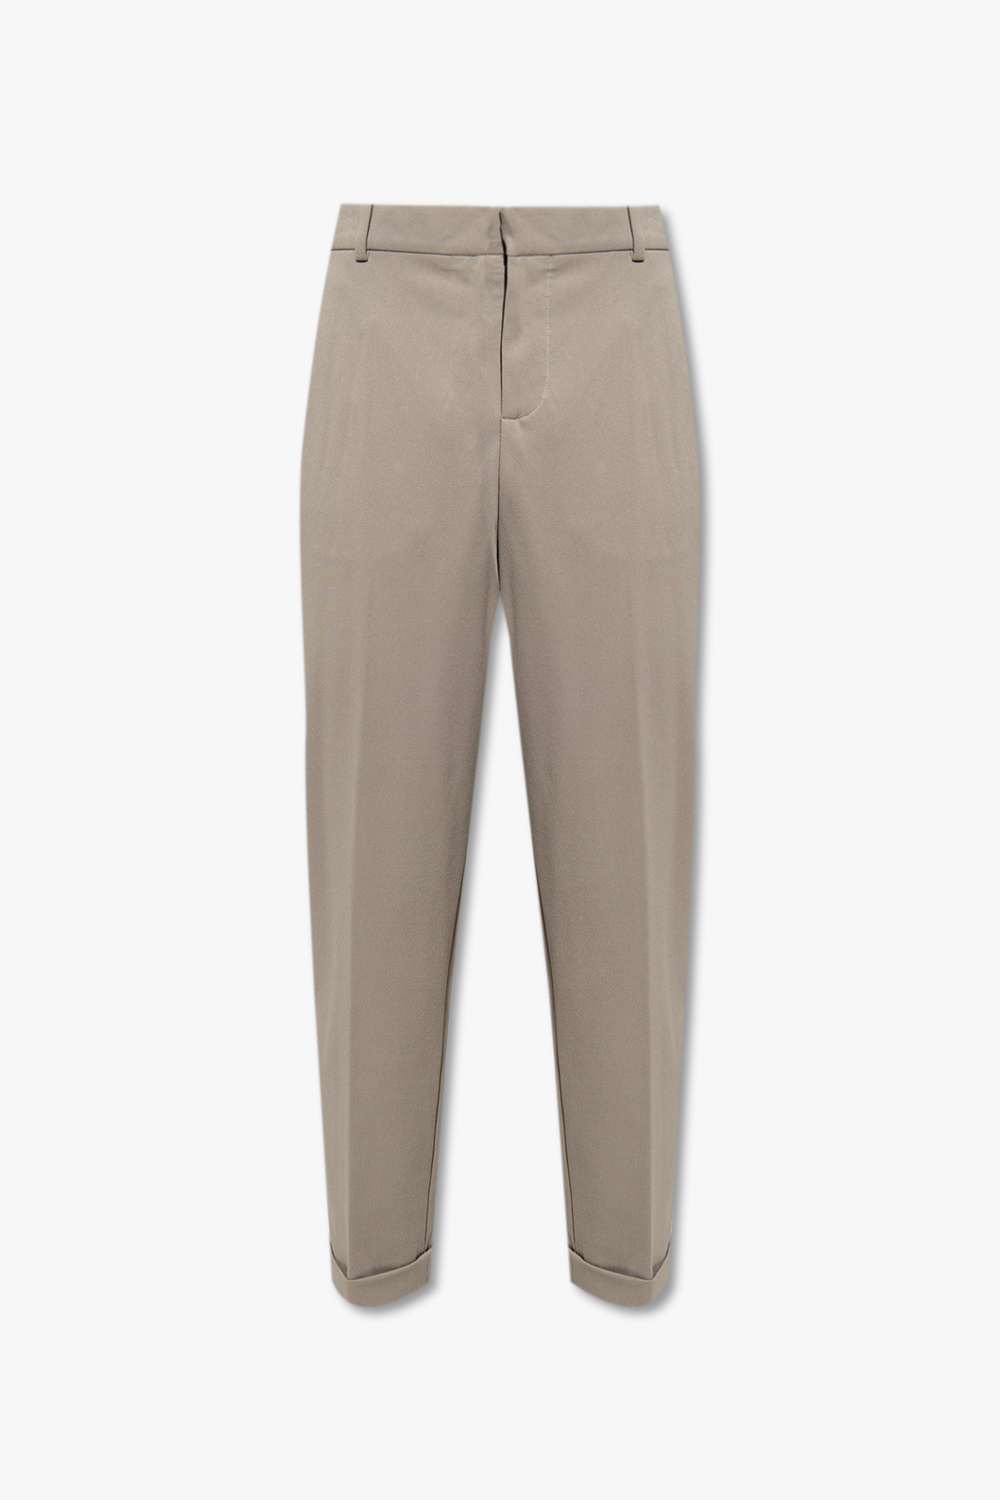 Grey Trousers with turn-ups Balmain - Vitkac GB